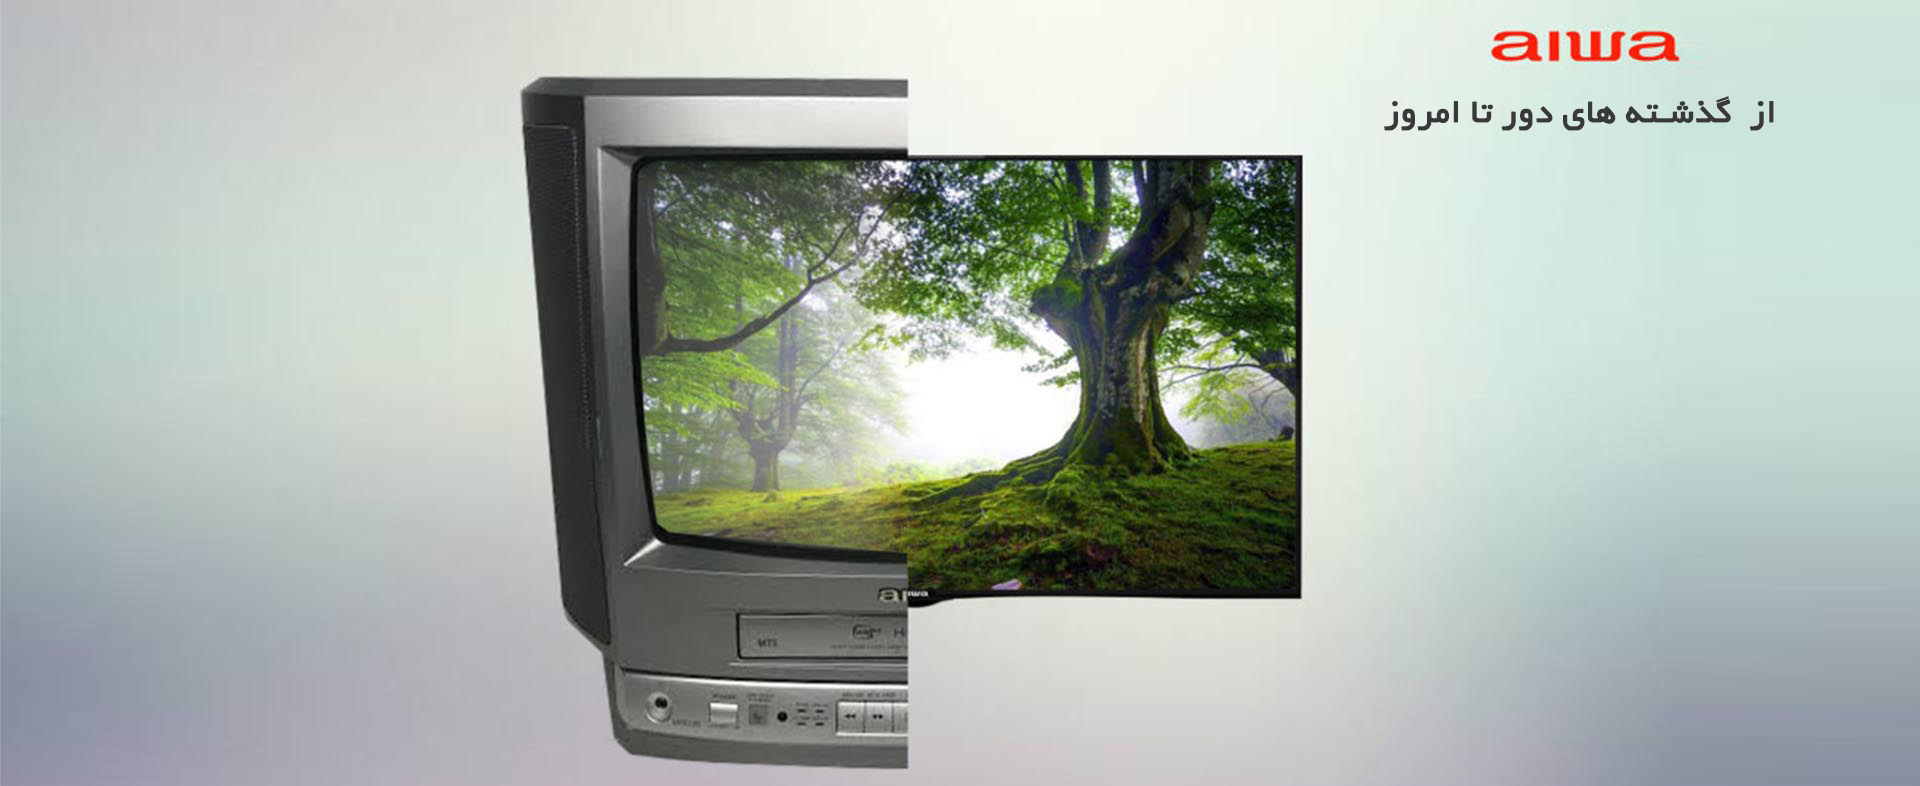 تلویزیون آیوا مدل 43D18FHD - از گذشته های دور